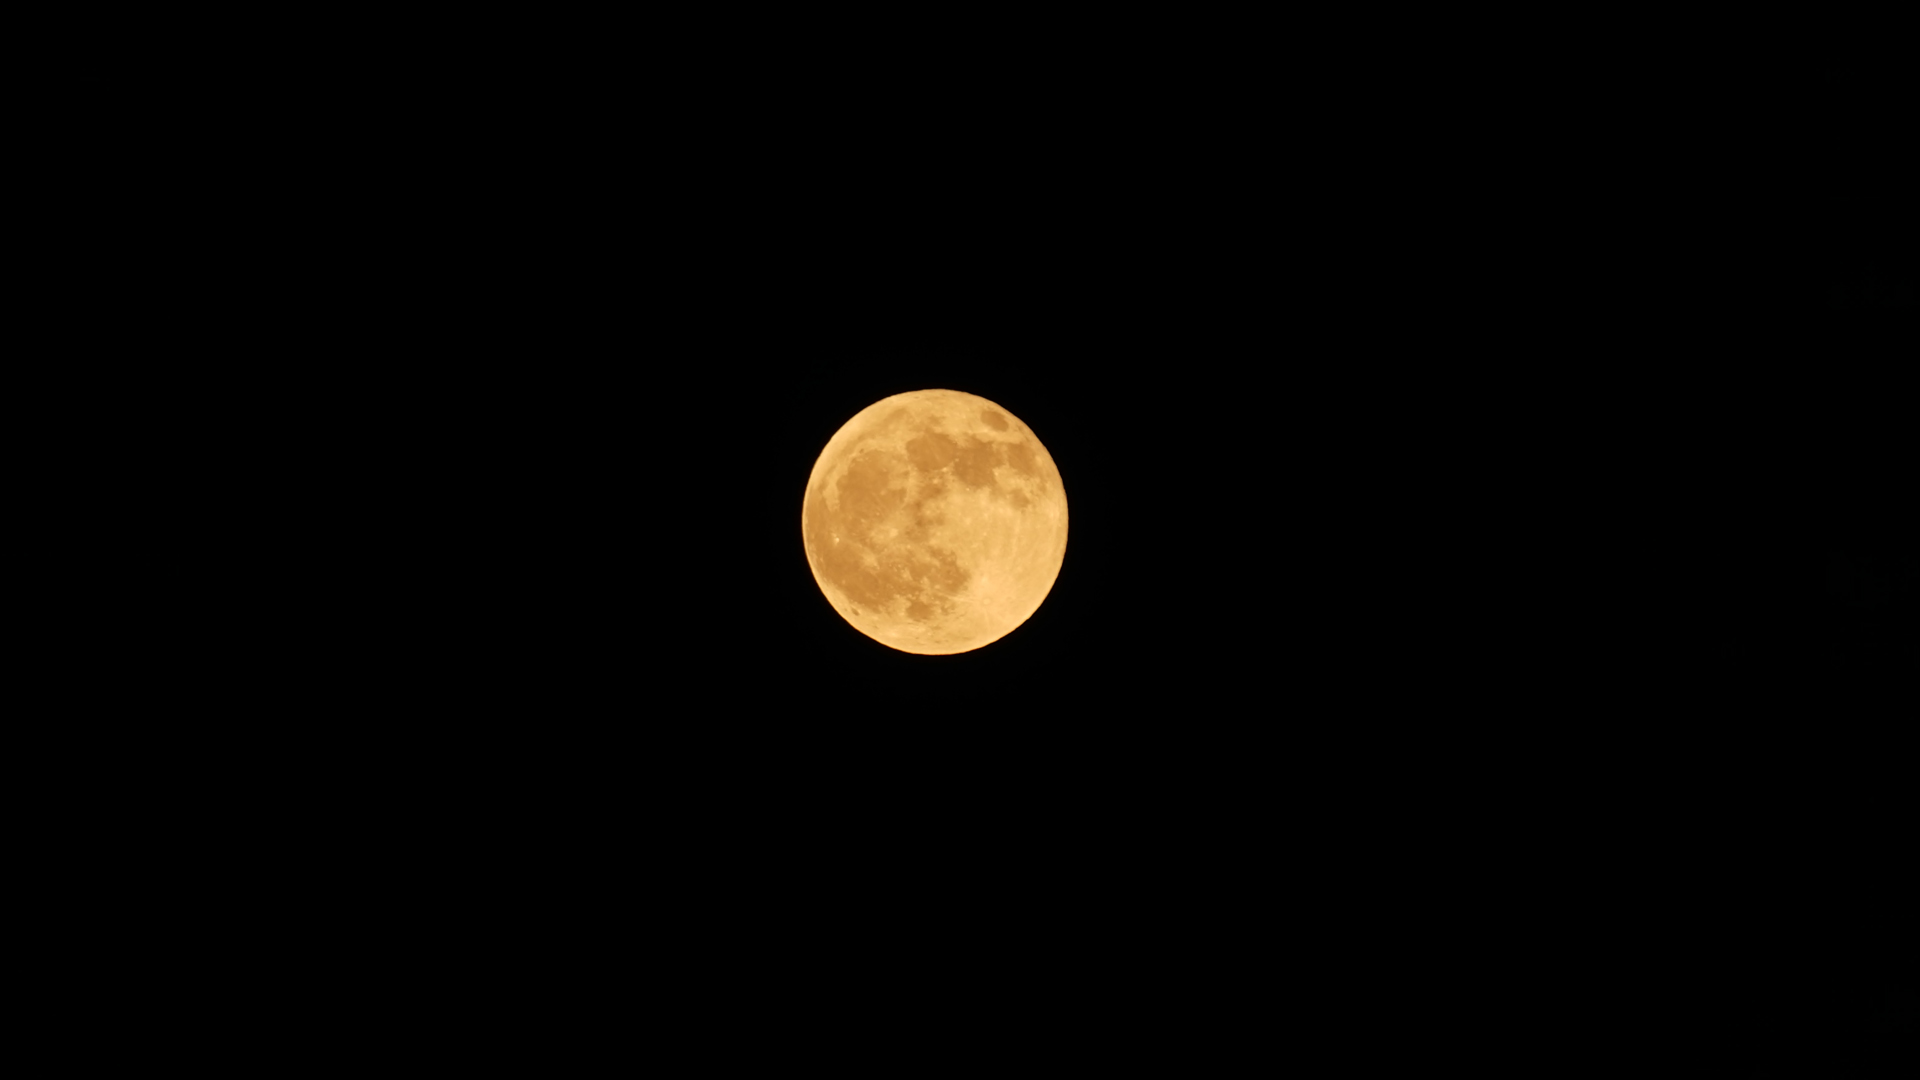 Fotostrecke Mond, Abbildung 23: Immer wieder aufs Neue faszinierend: der volle Mond